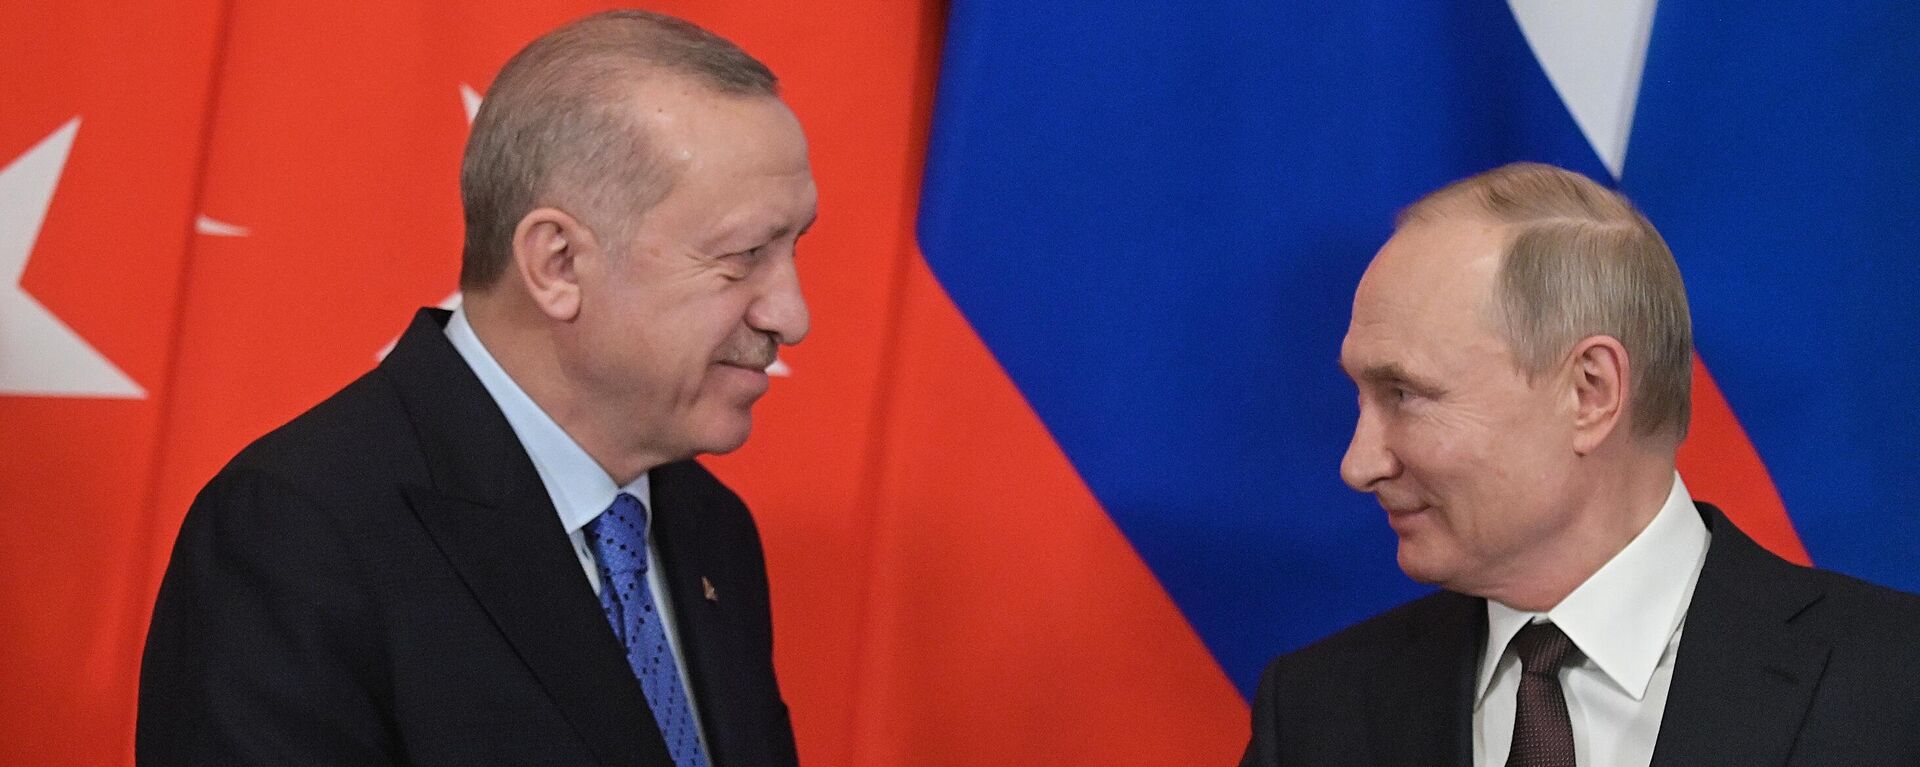 Президент РФ В. Путин встретился с президентом Турции Р. Эрдоганом - Sputnik Молдова, 1920, 23.10.2021